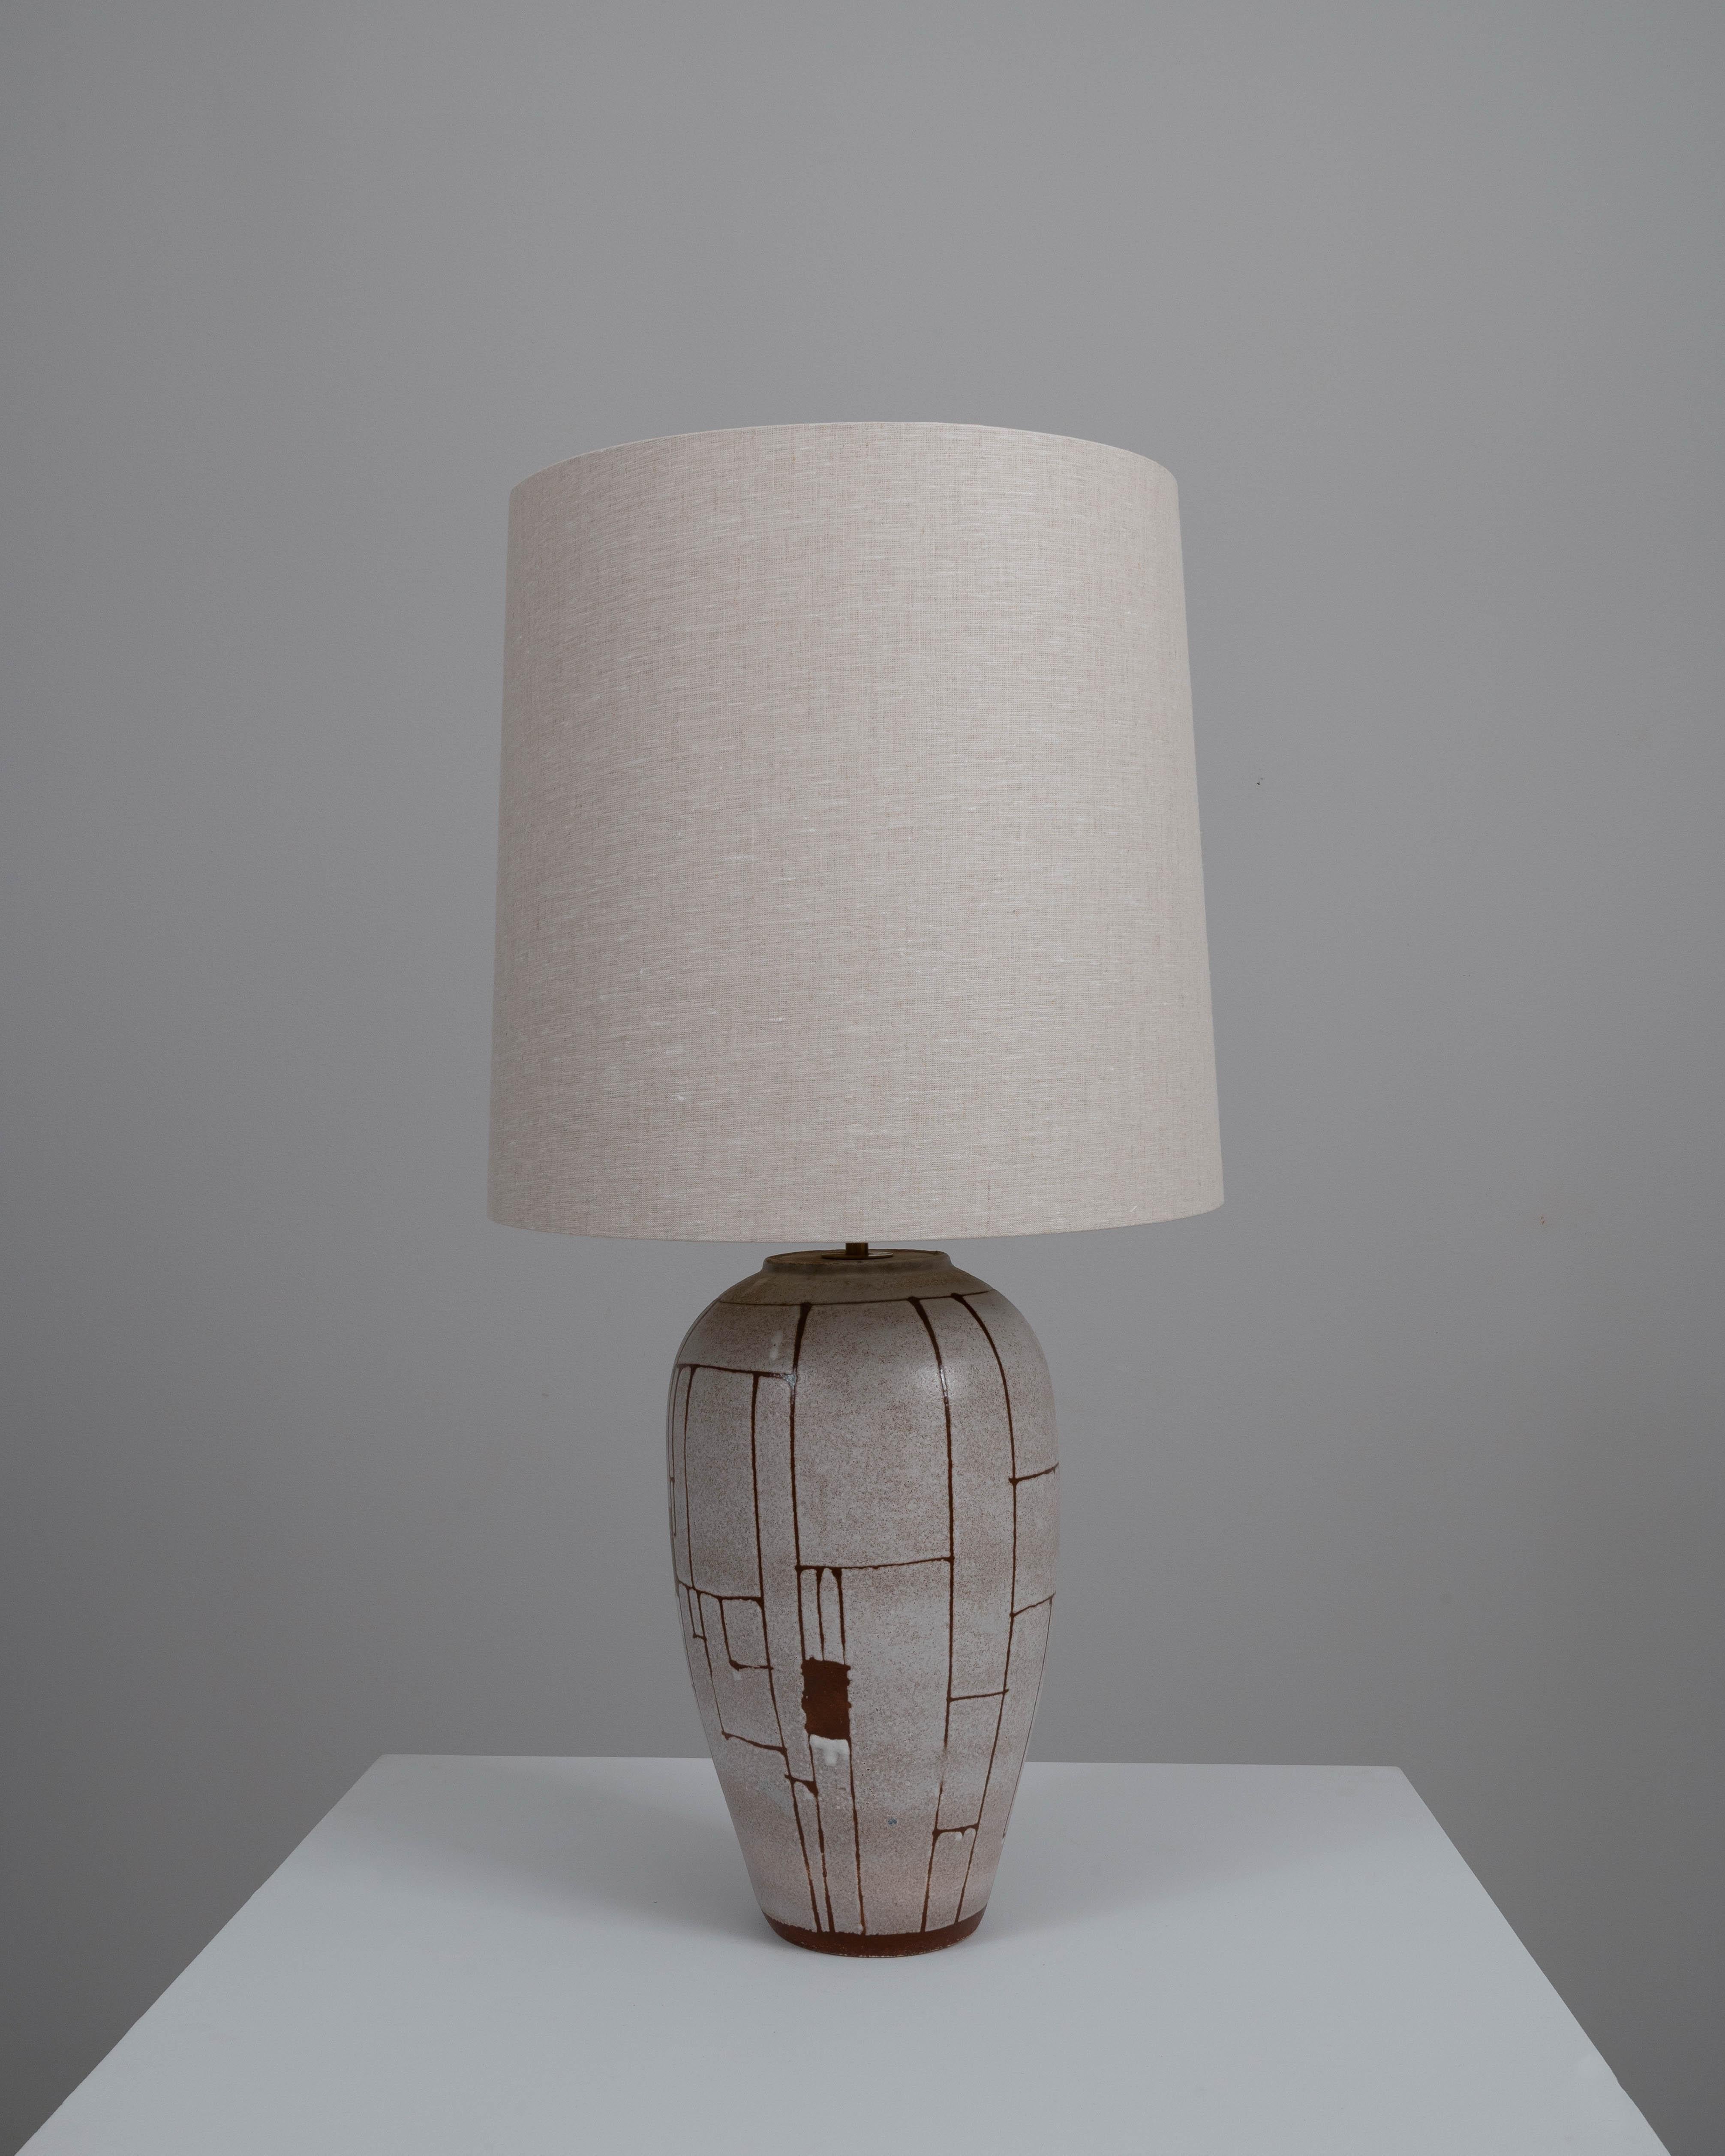 Élevez votre décoration intérieure avec cette exquise lampe de table en céramique allemande du XXe siècle, où le design minimaliste rencontre le charme rustique. La base de la lampe présente un effet de glaçage joliment craquelé dans une palette